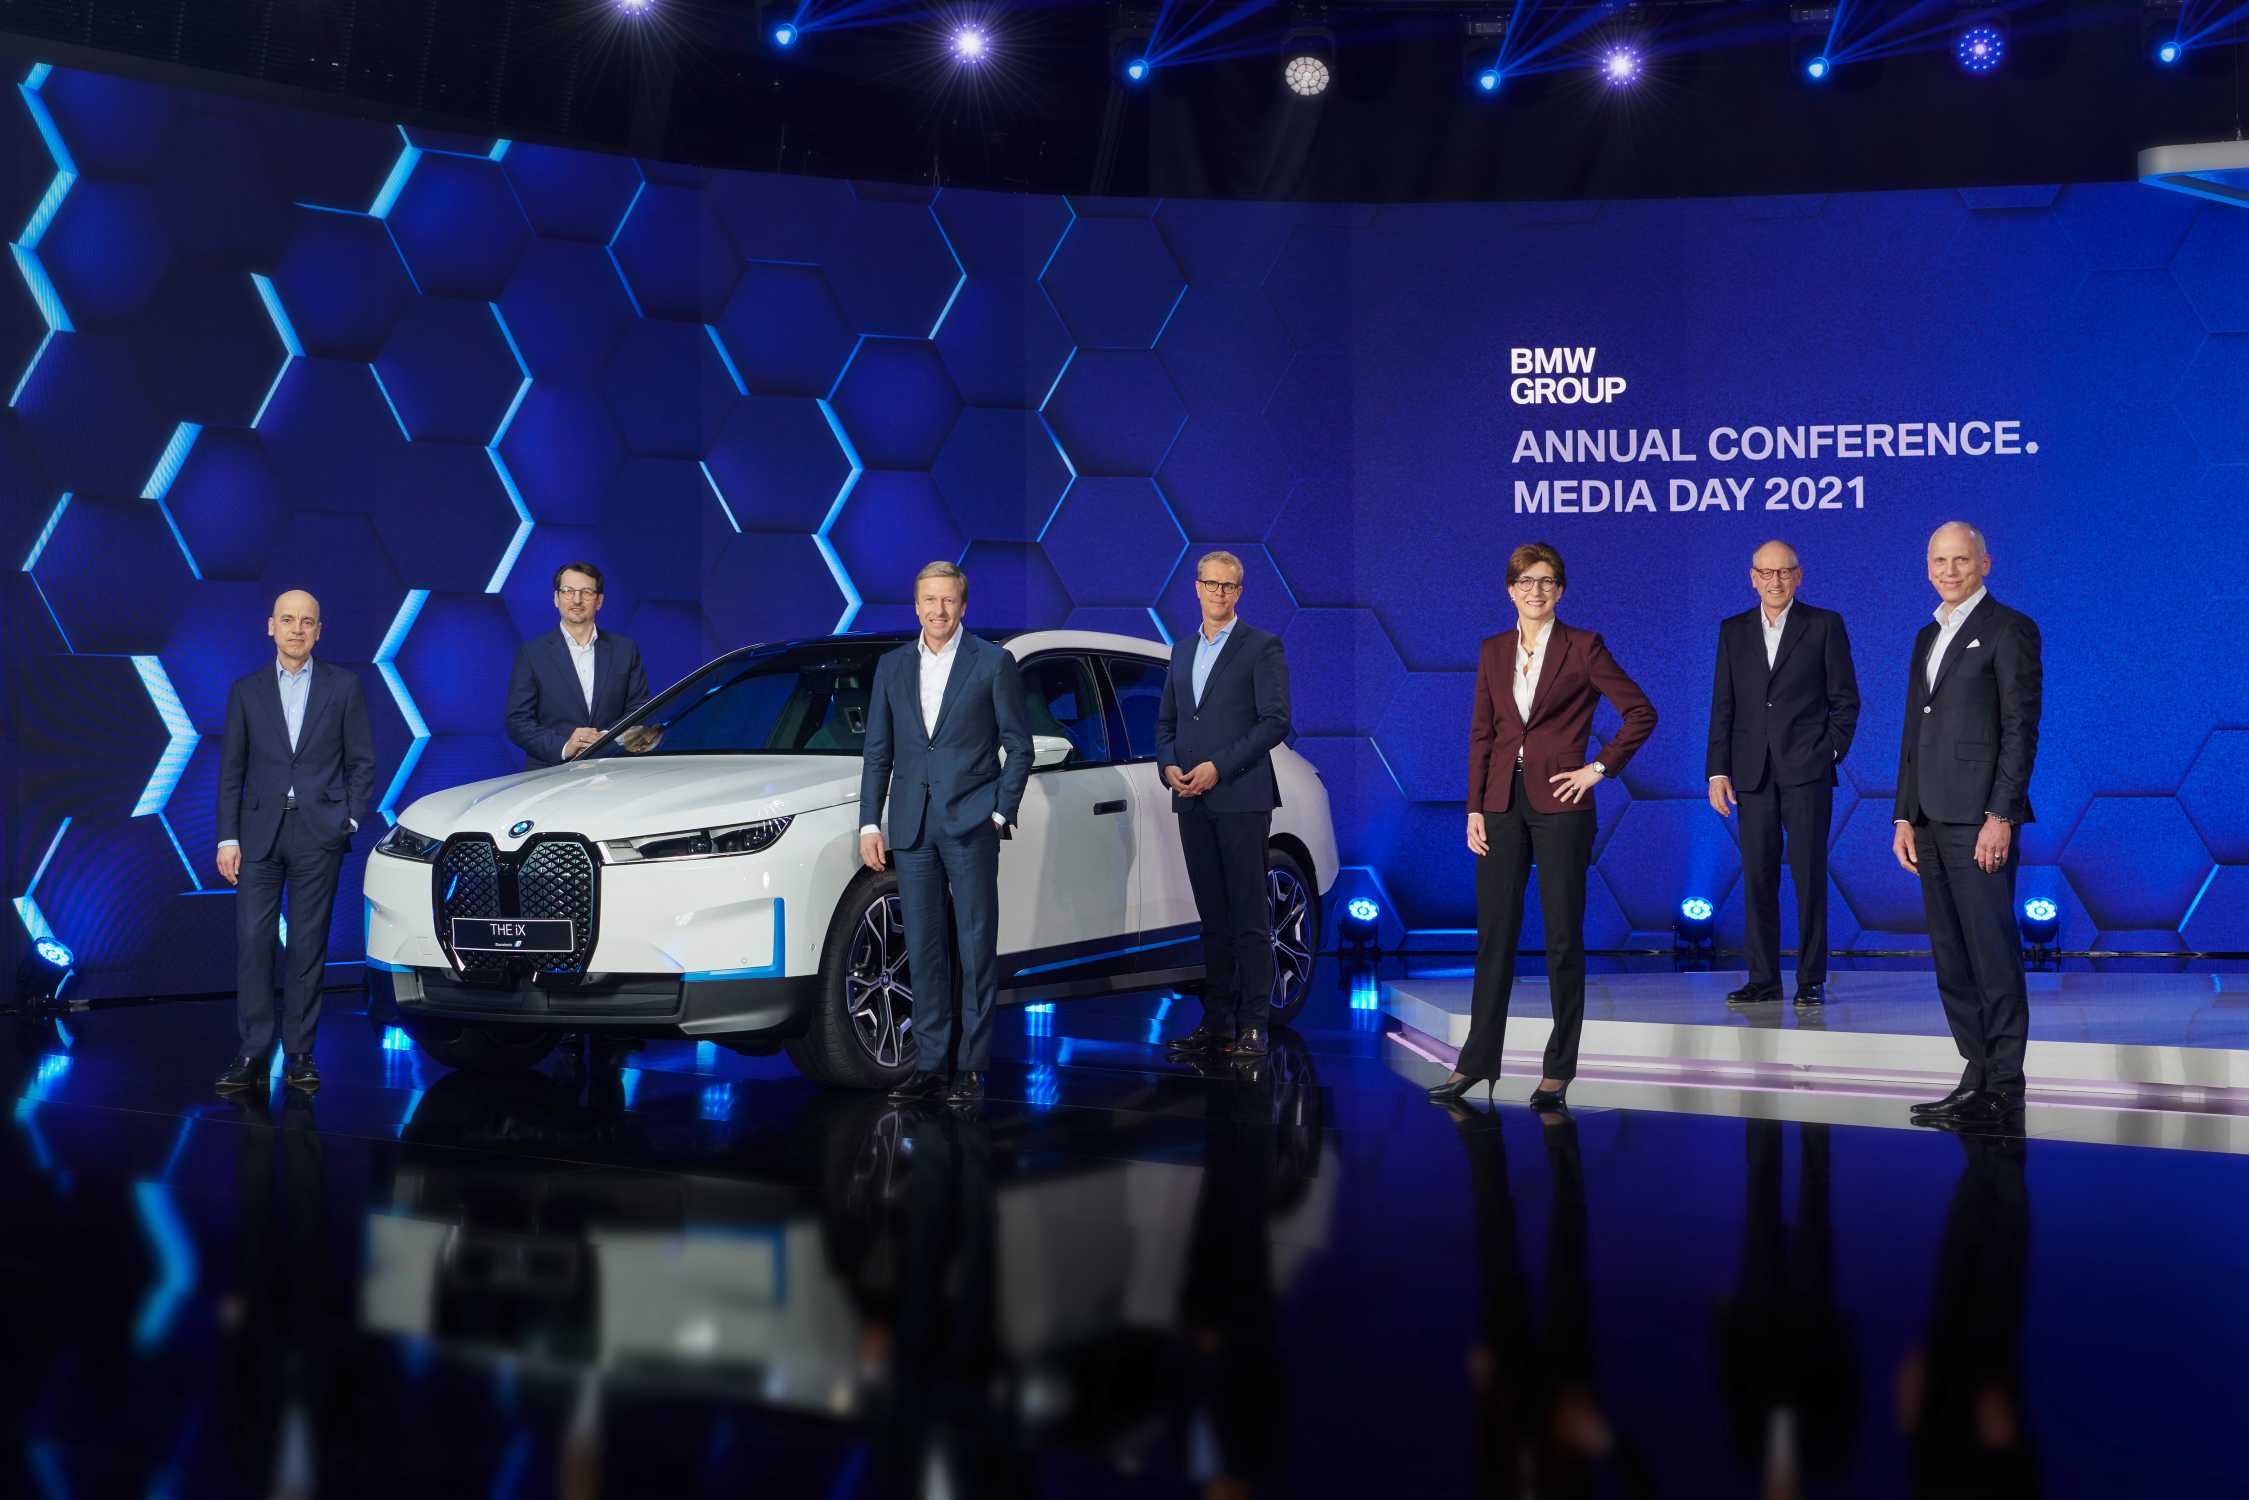 Una nueva era, una nueva clase. El Grupo BMW intensifica su apuesta tecnológica